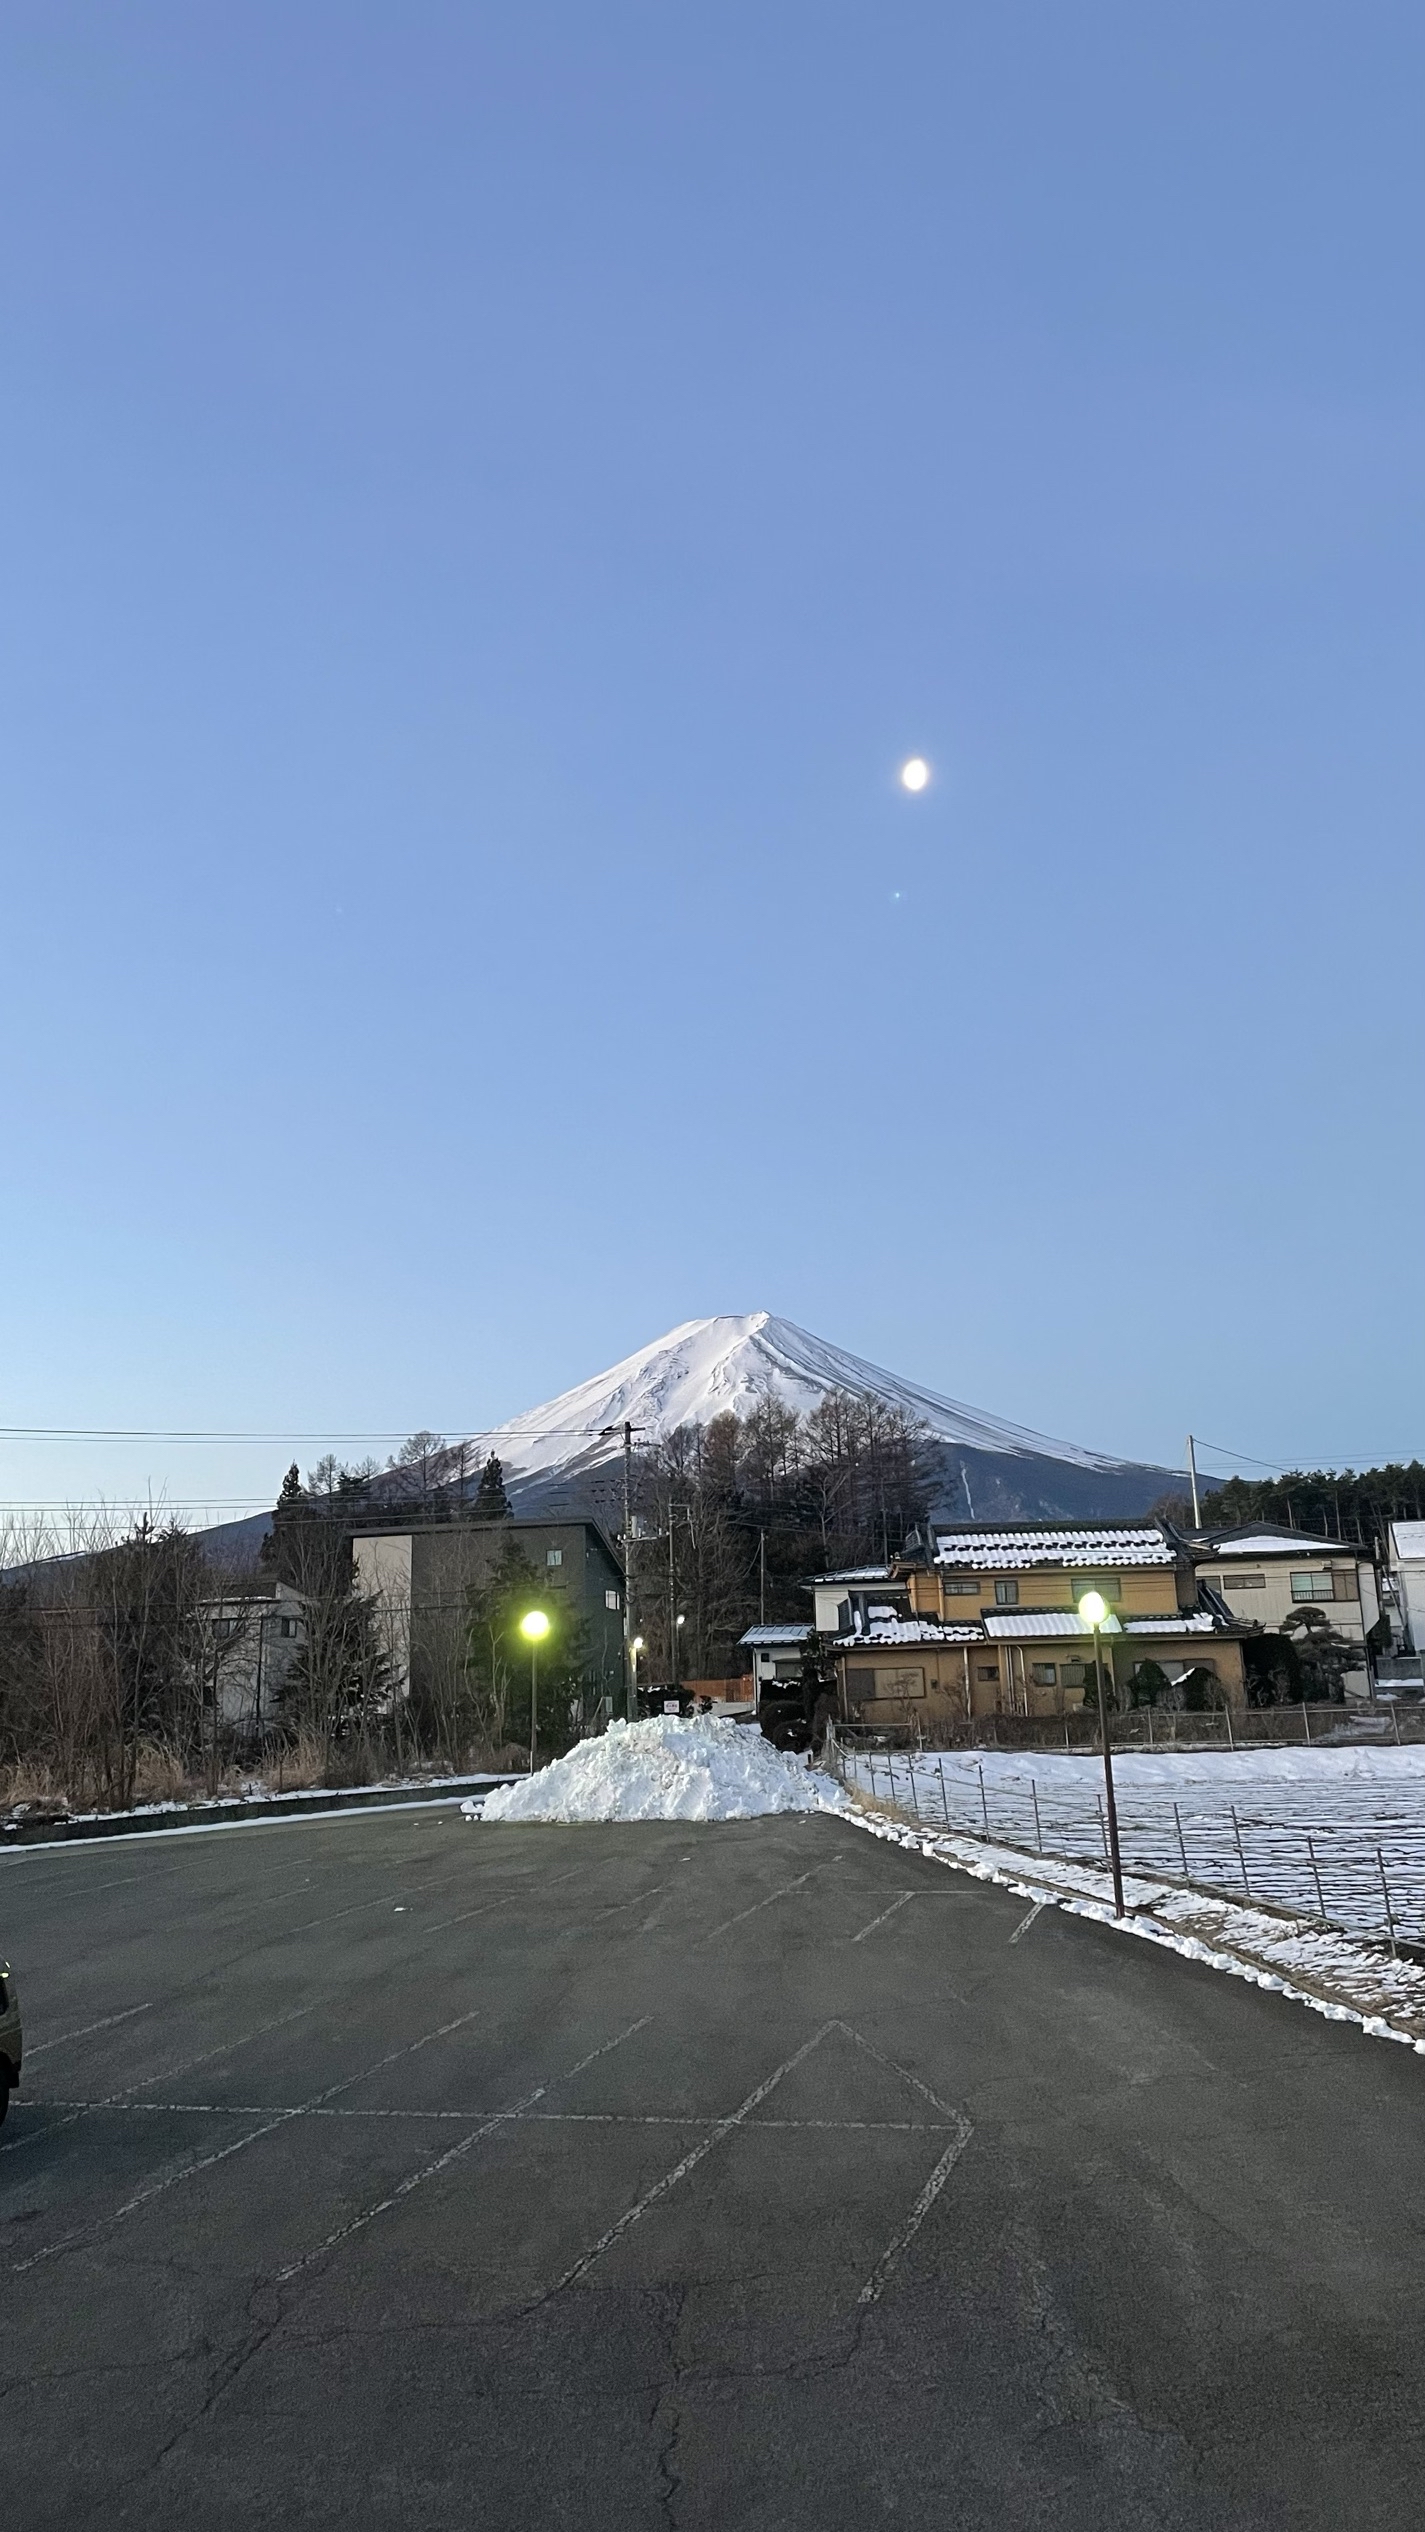 酒店位置好，一侧正对富士山，距山挺近。距离打卡名店日川时计店也不远。酒店对面有家非连锁便利店，包子馅